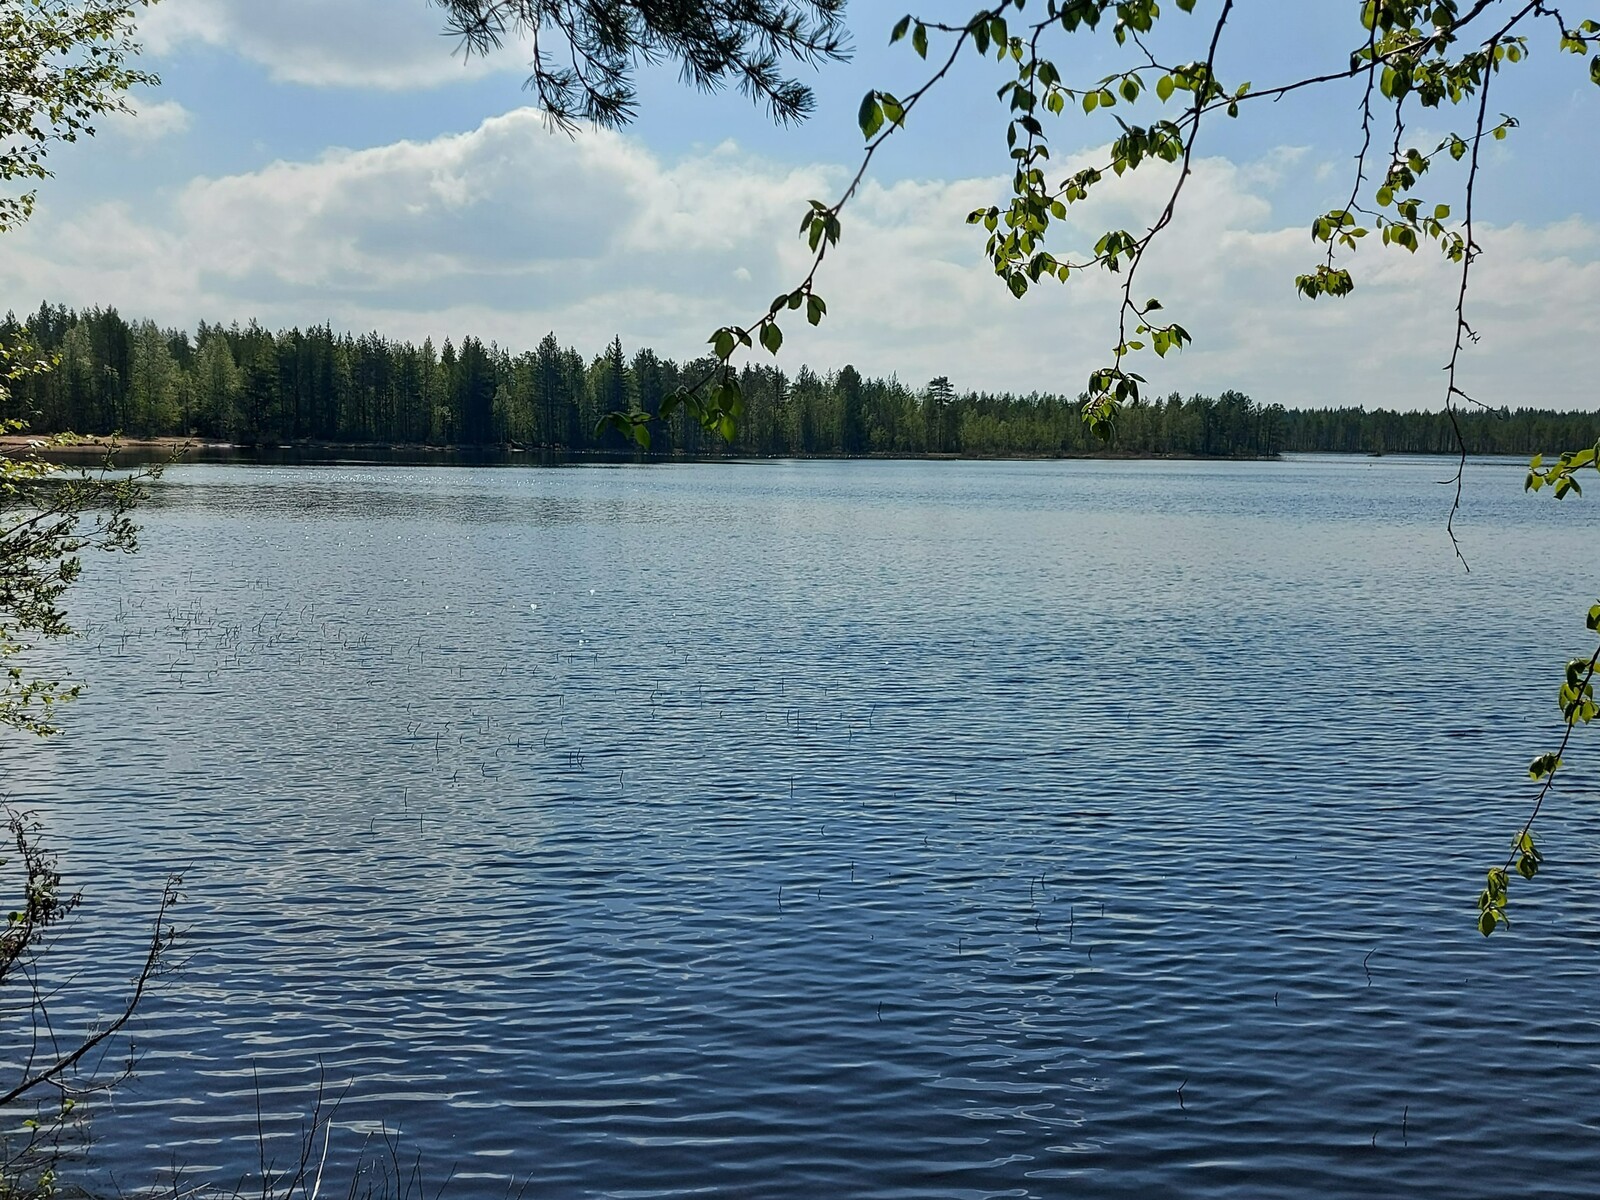 Näkymä järvelle, jossa näkyy tontin lähellä sijaitseva uimaranta